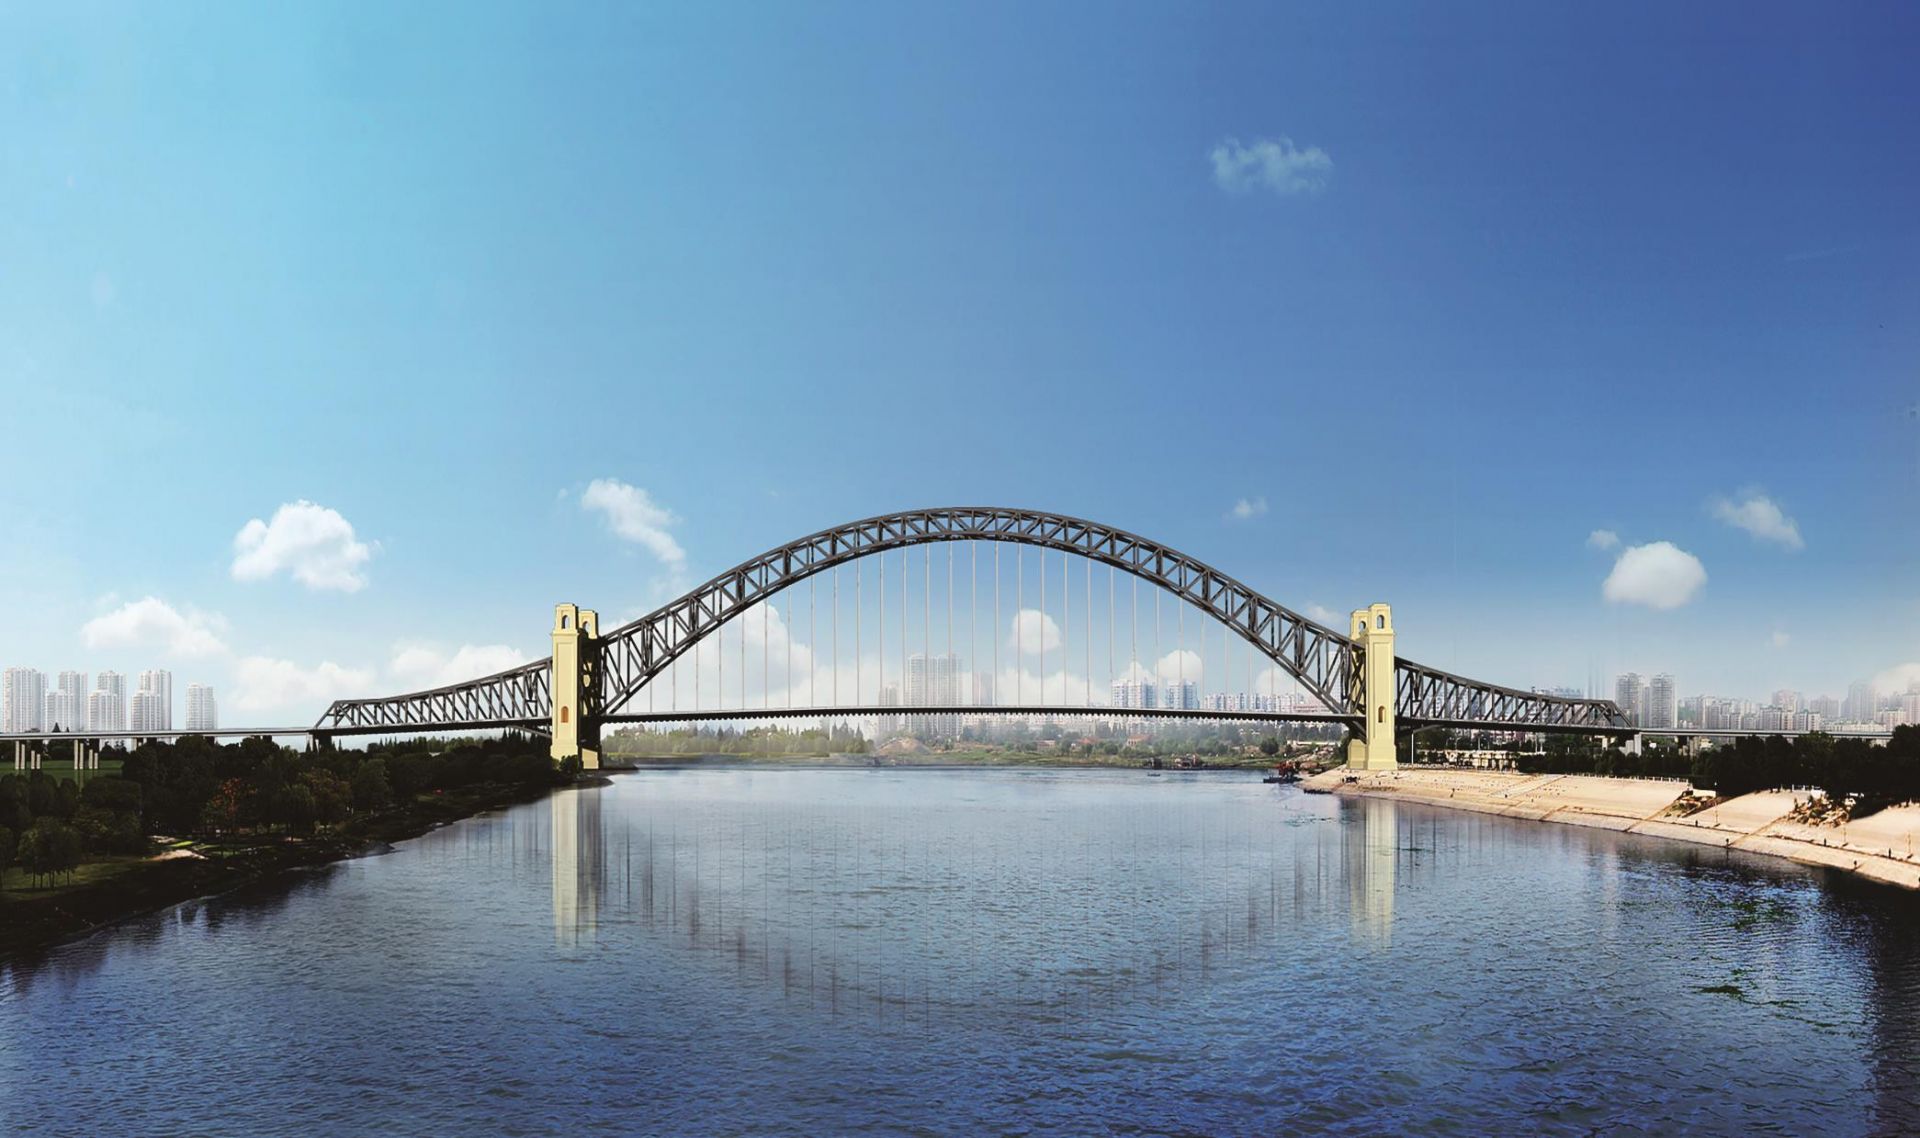 754千米,主桥长672米,主跨408千,为中承式三跨连续钢桁系杆拱桥